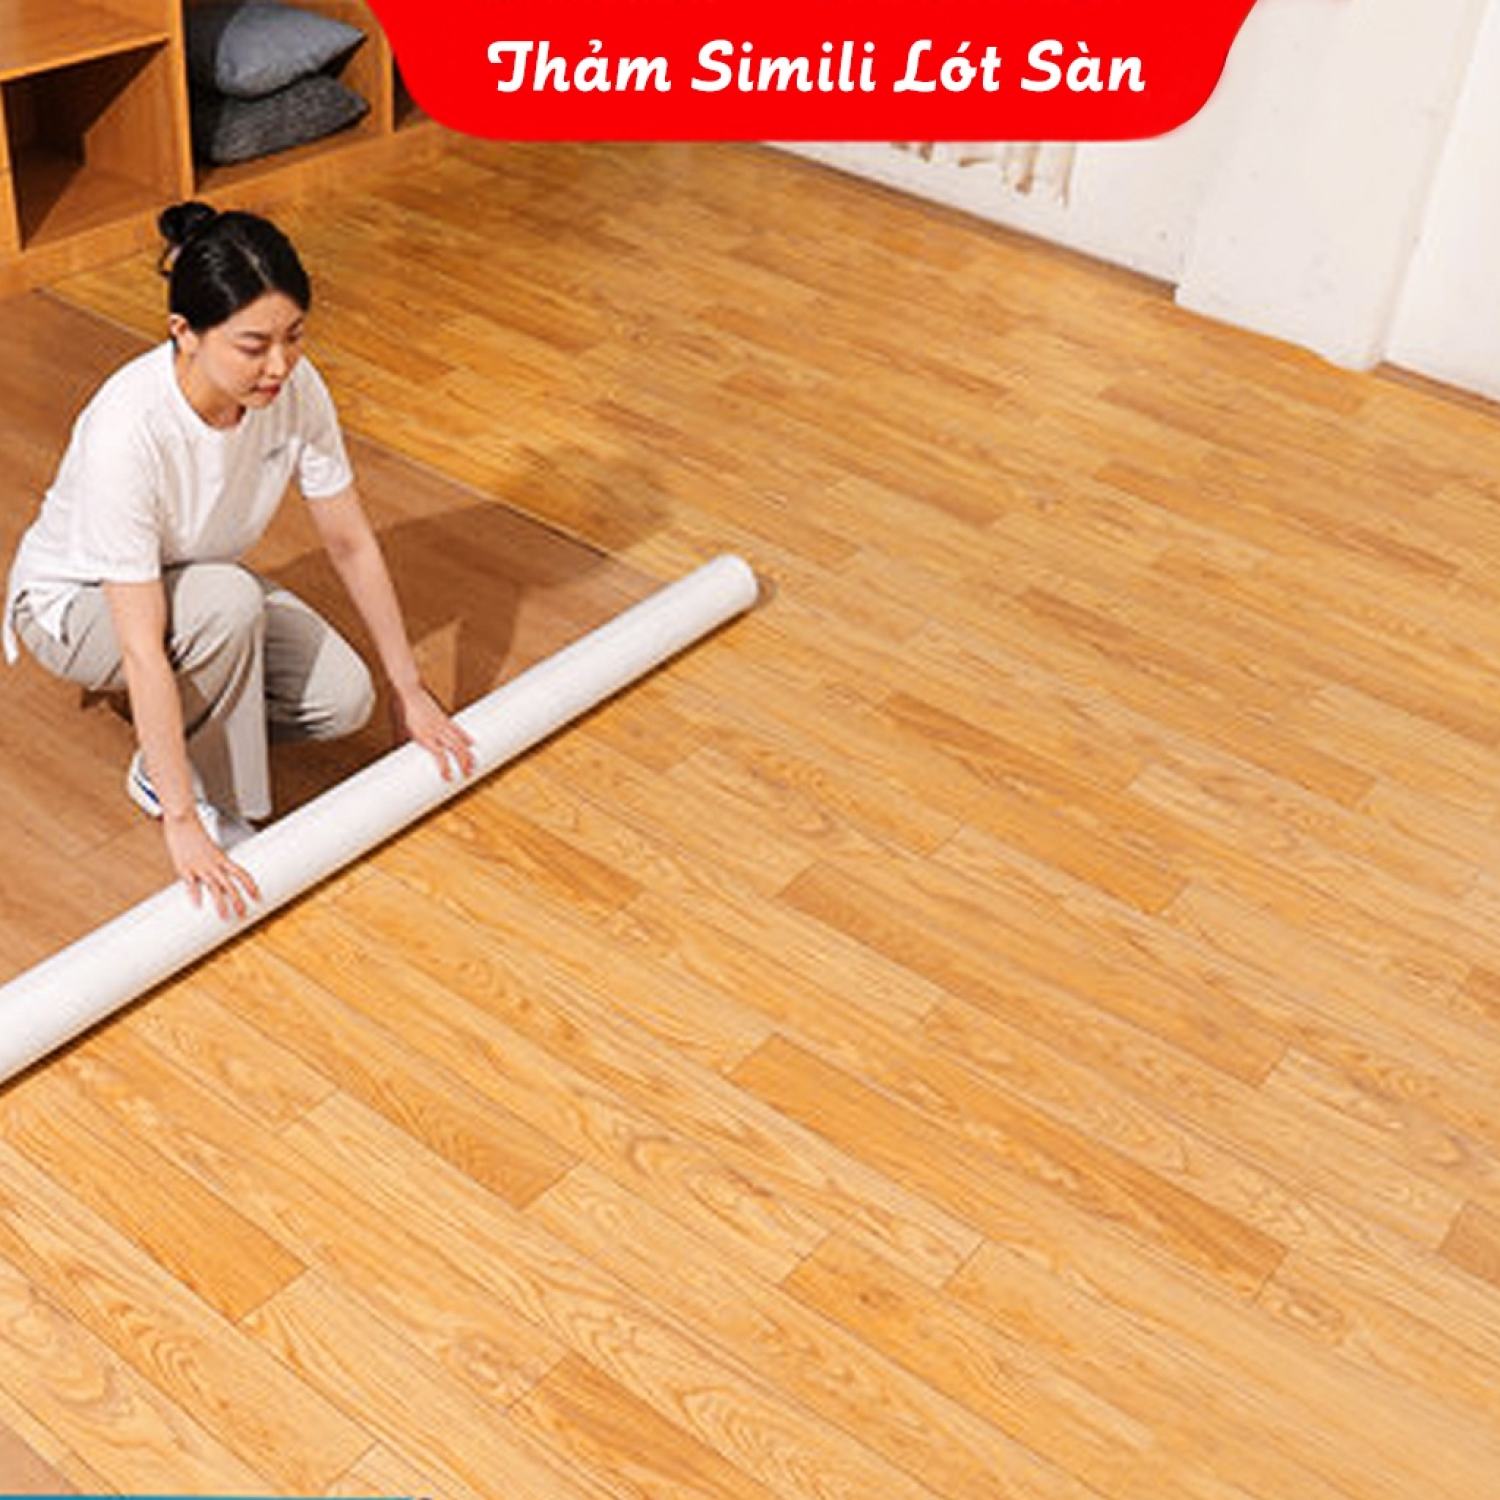 Simili lót sàn nhà thảm nhựa lót sàn giả vân gỗ nhiều mẫu dày 1mm